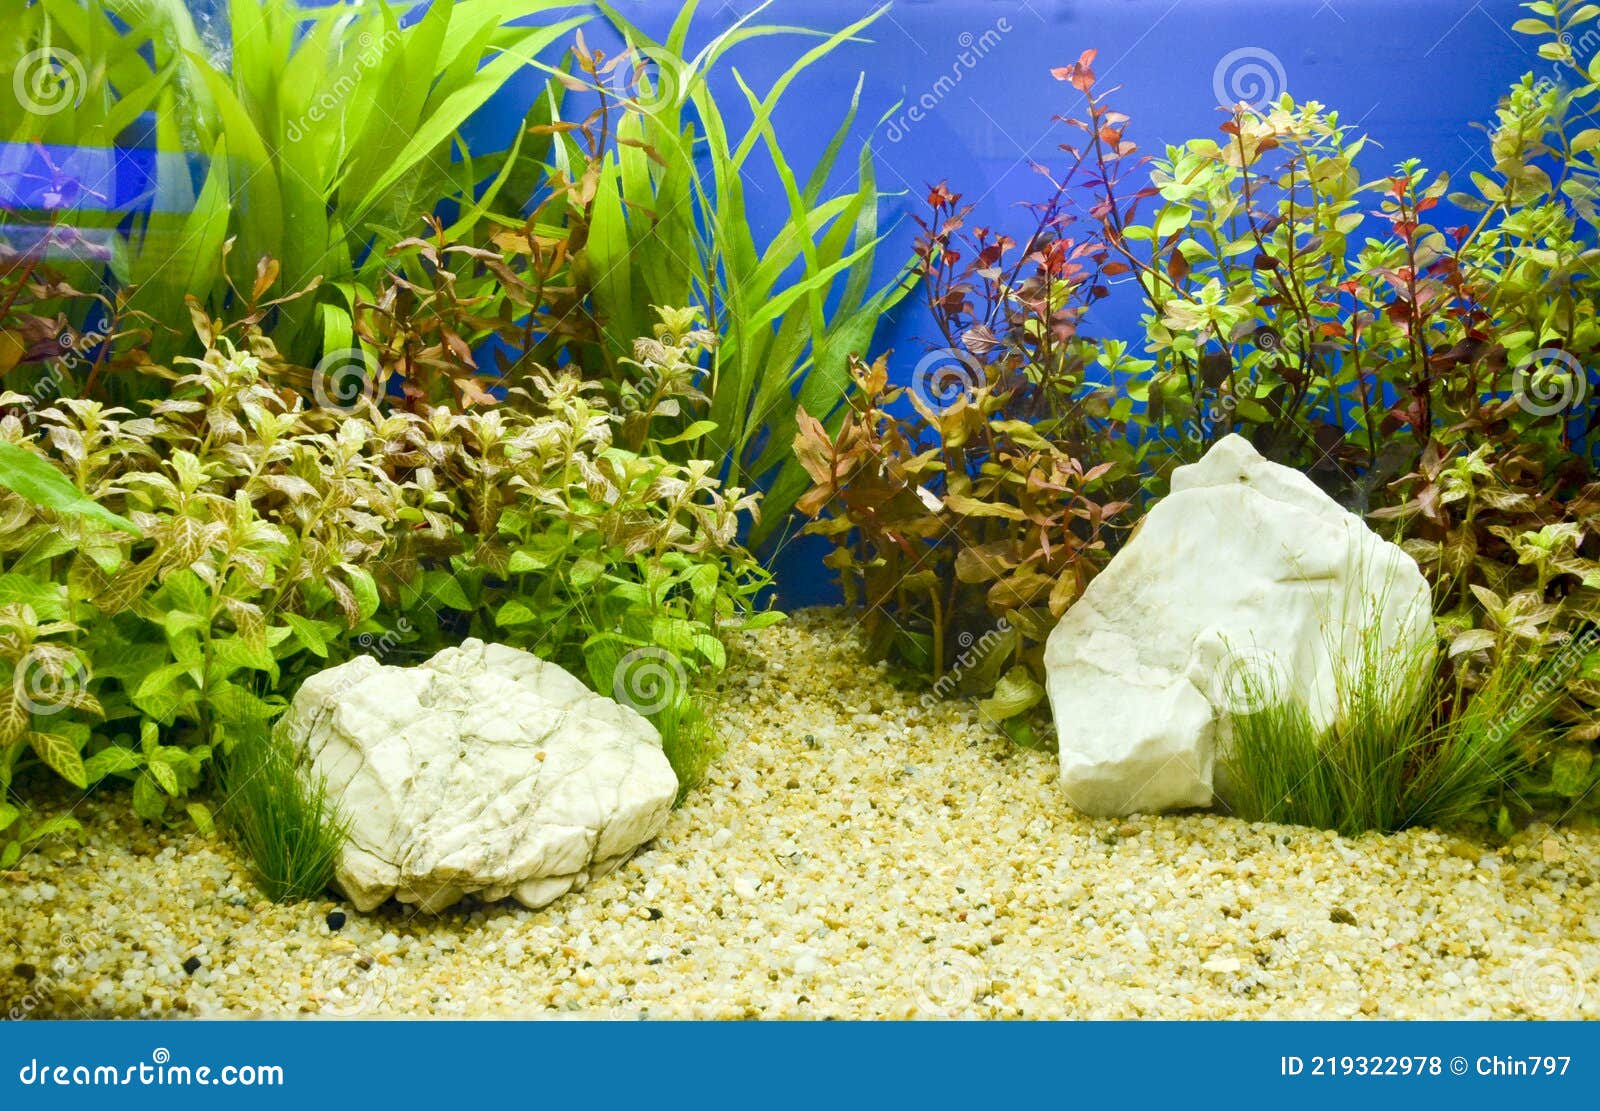 Decorazione Di Progettazione Di Fondo Per Acquario Sottomarino Fotografia  Stock - Immagine di fresco, profondo: 219322978